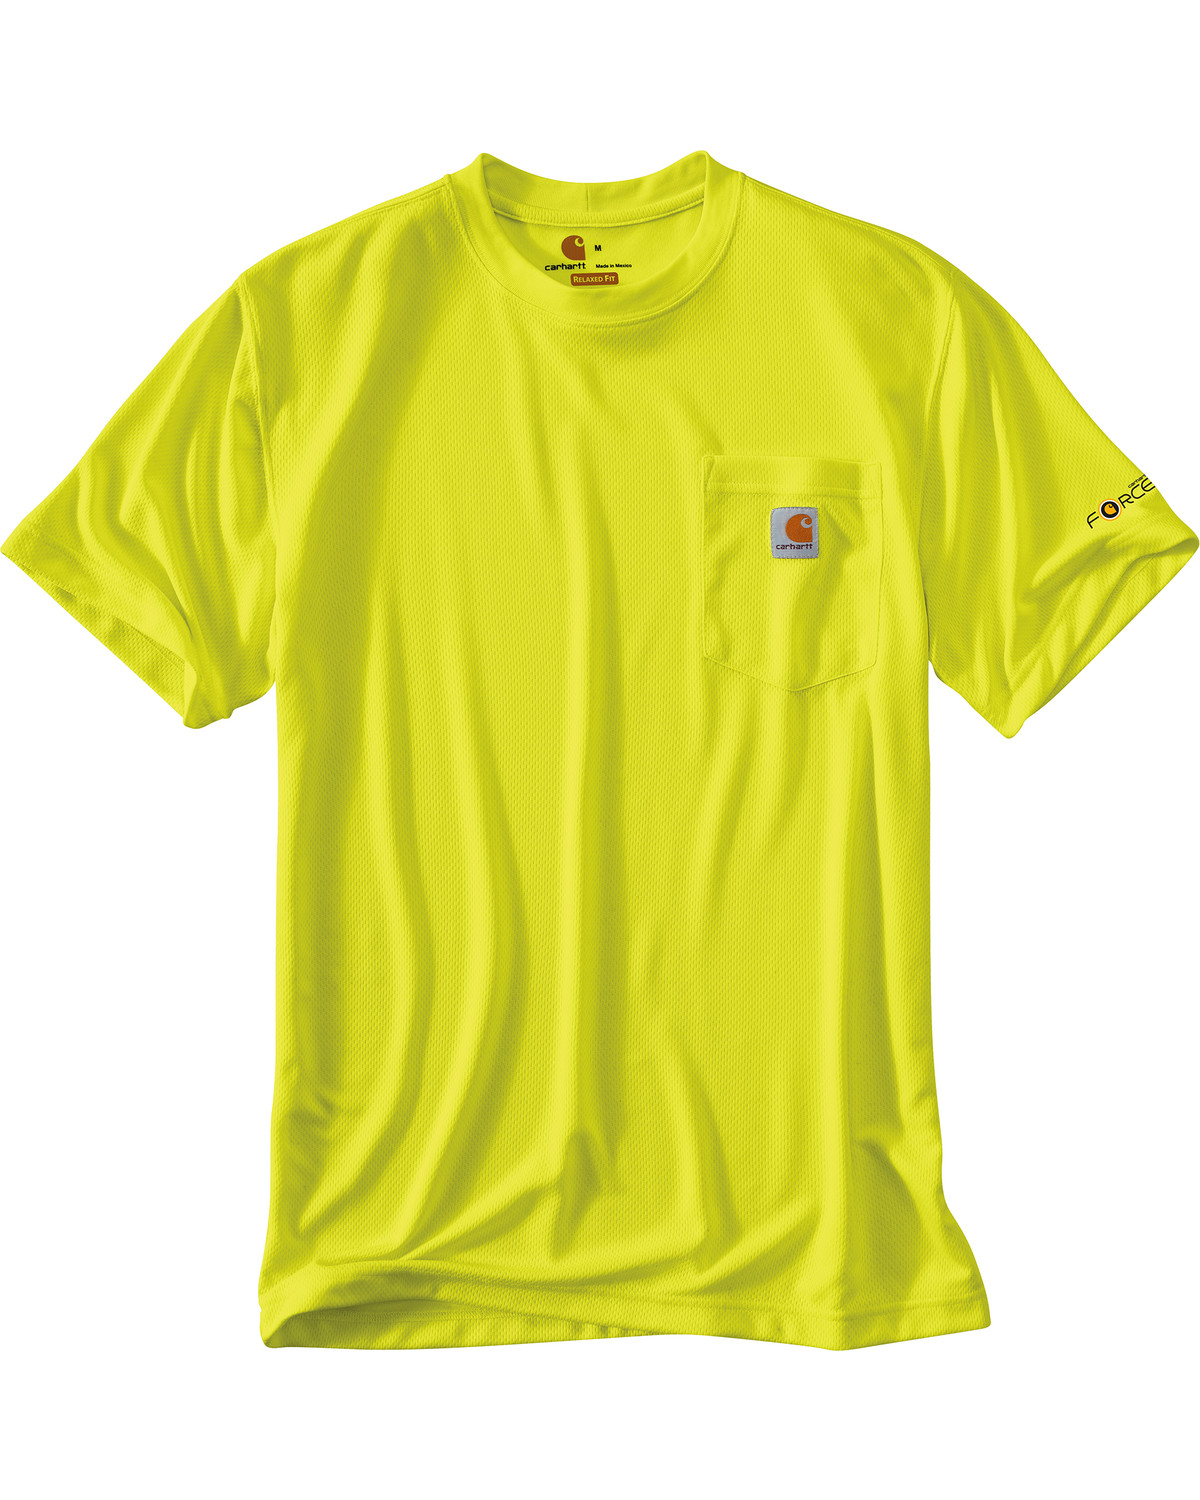 Carhartt Men's Color Enhanced Force Short Sleeve T-Shirt  - Tall